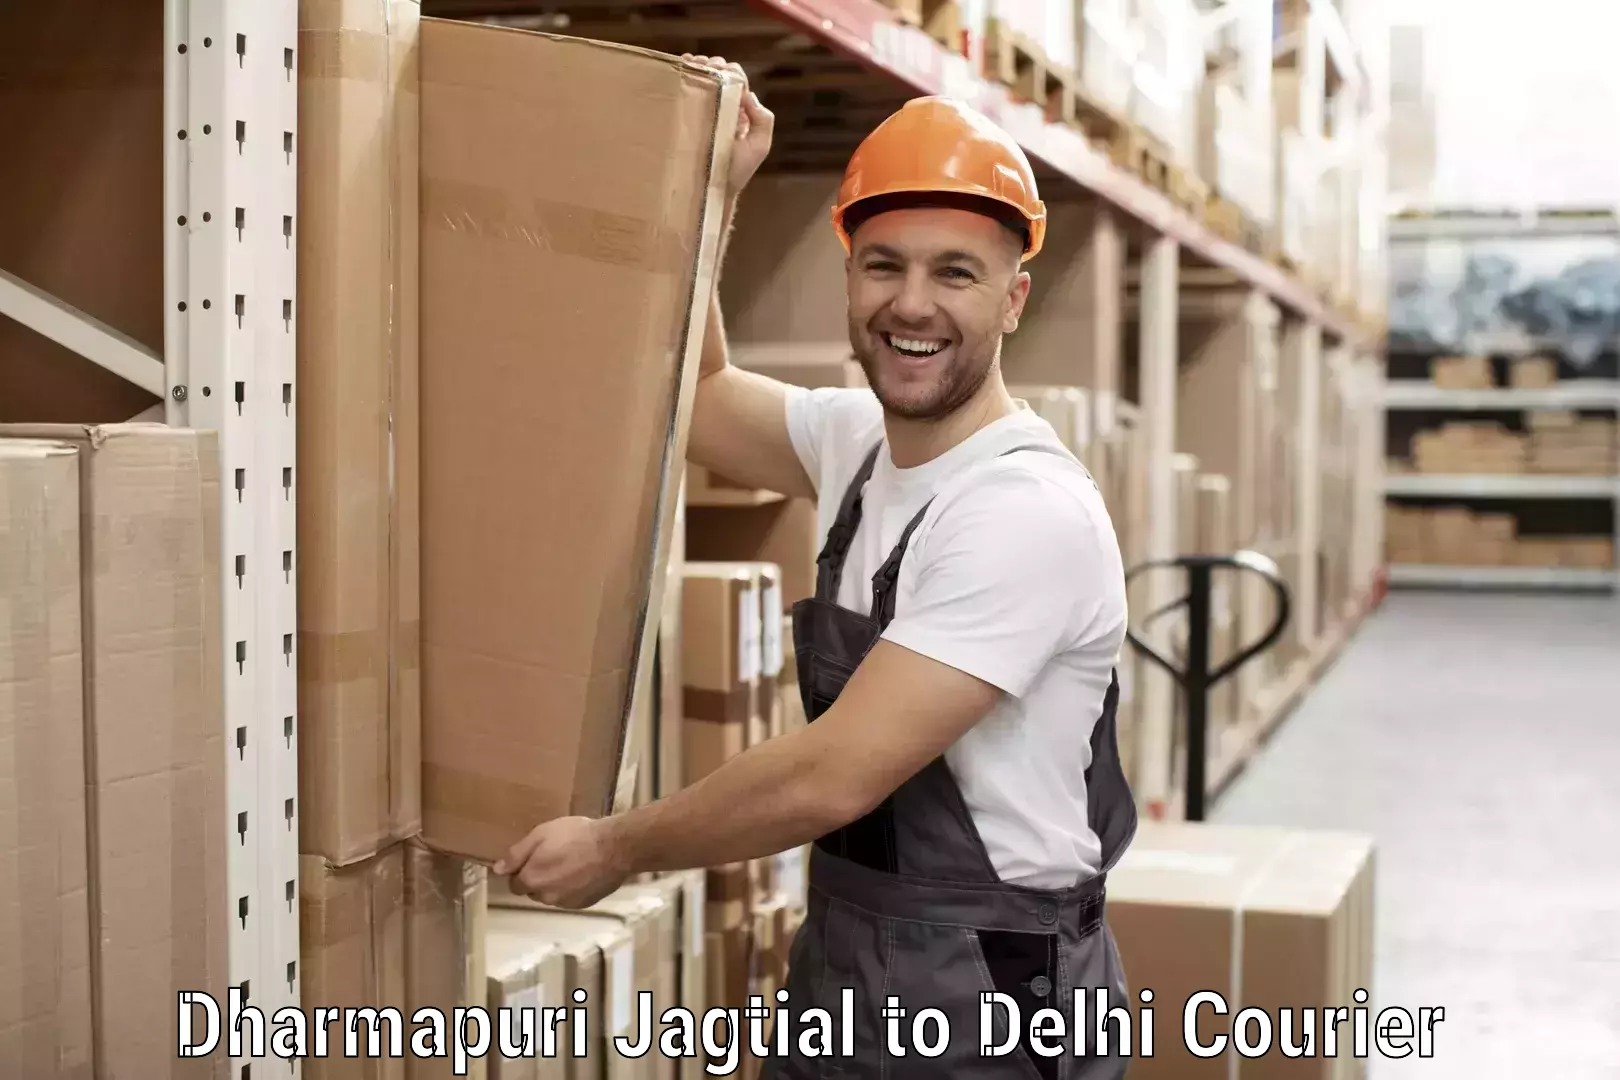 Customer-focused courier Dharmapuri Jagtial to Jawaharlal Nehru University New Delhi